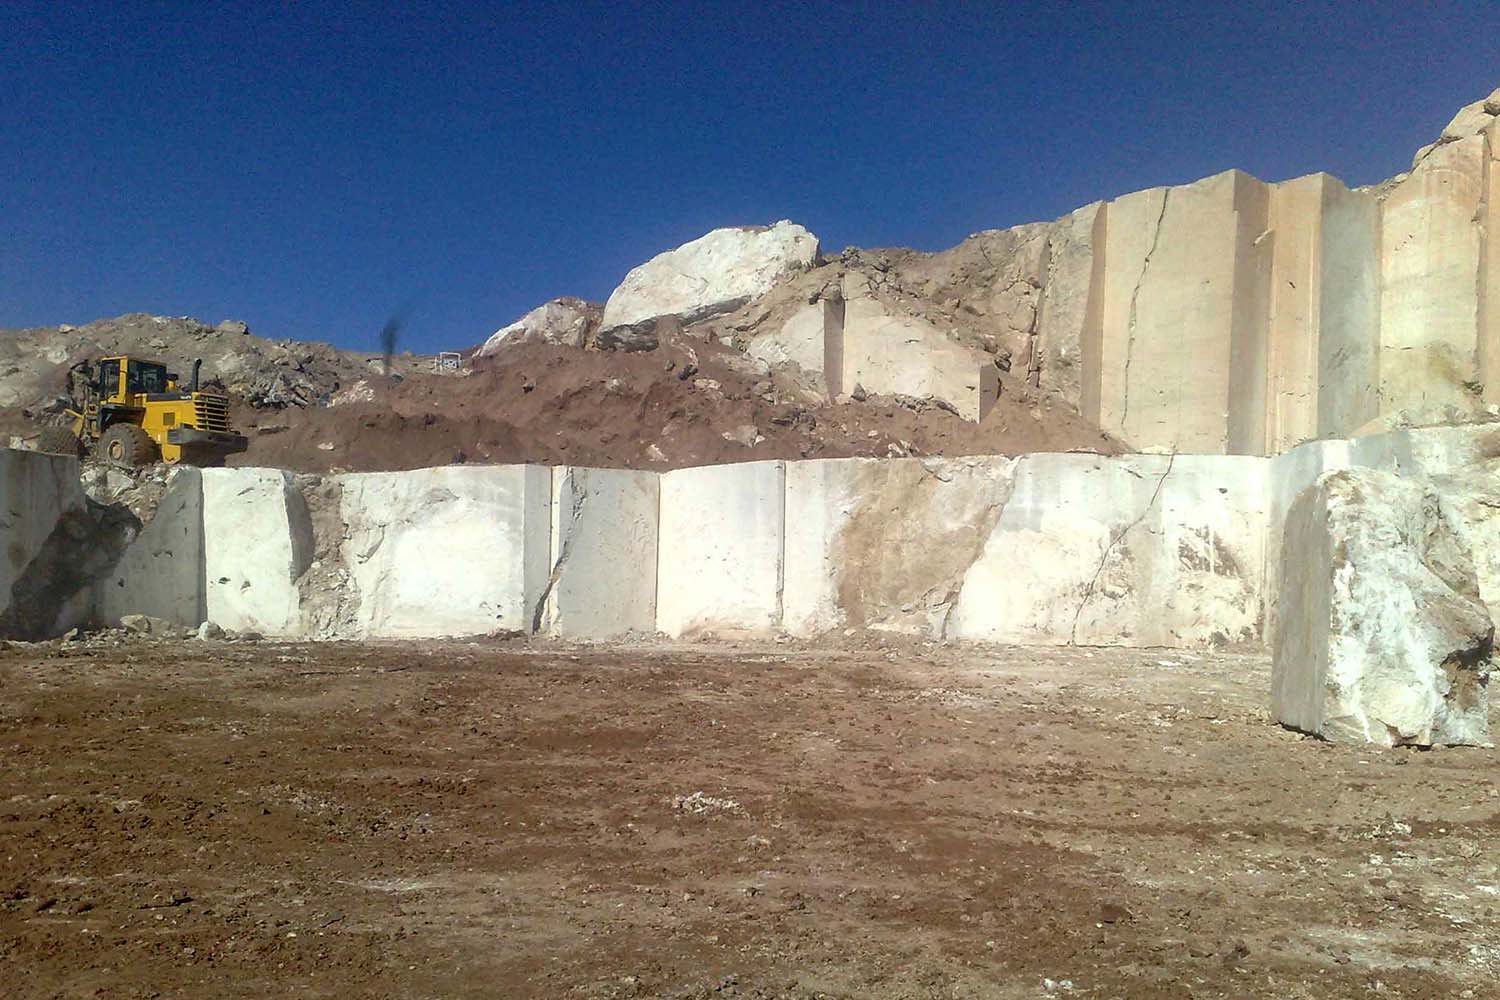 181 معدن توليد سنگ هاي تزئيني در آذربايجان غربي فعال است